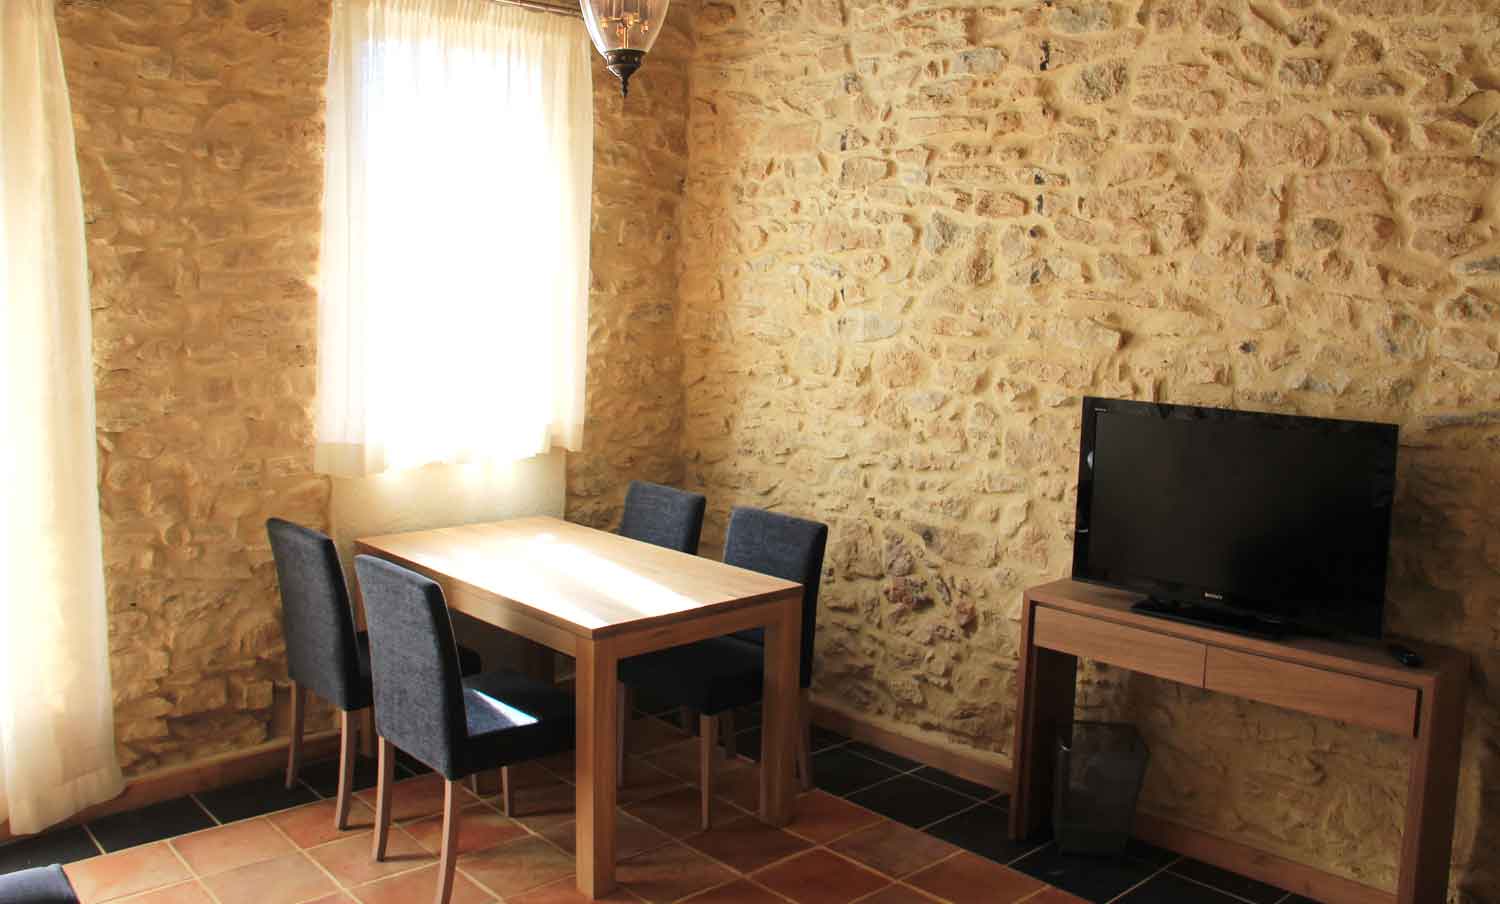 Location maison de vacances dans le Gard - GÃ®techene